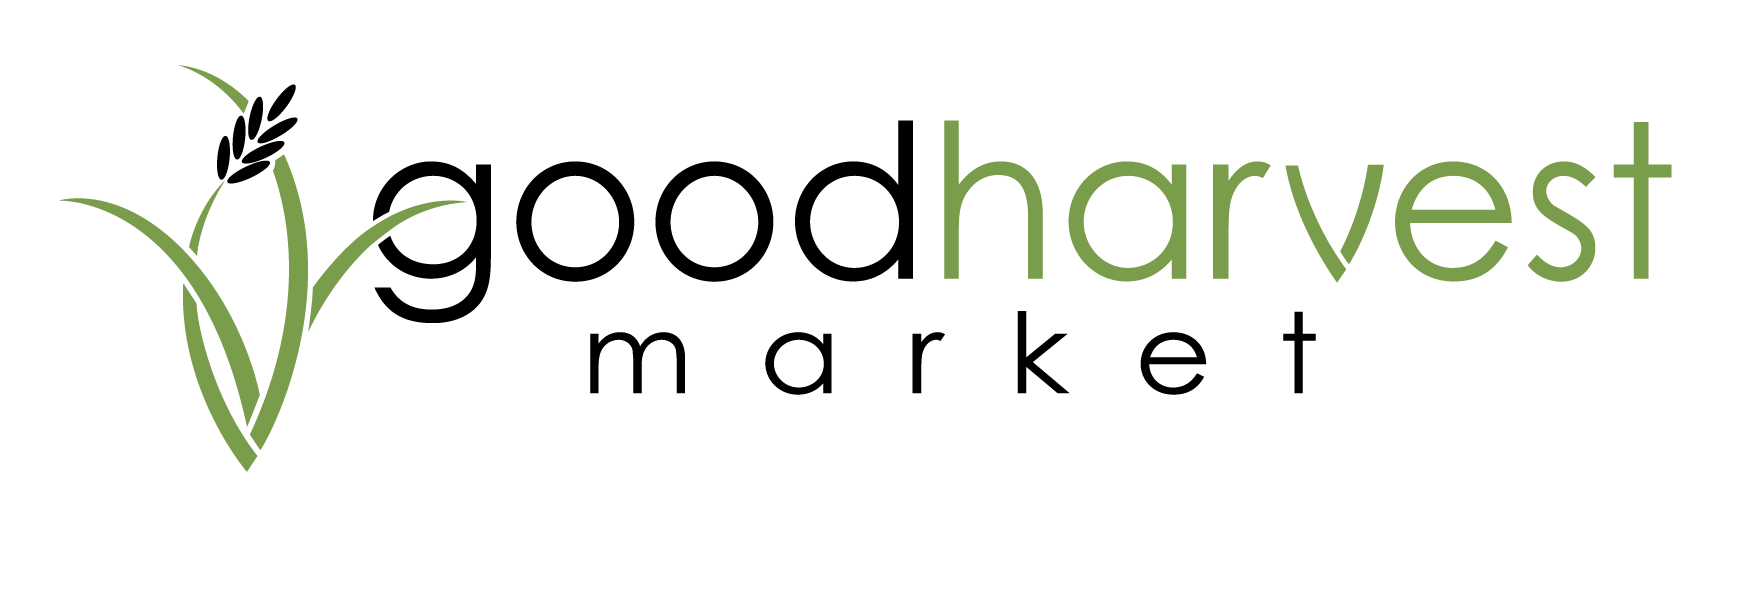 Good Harvest Market Company Logo